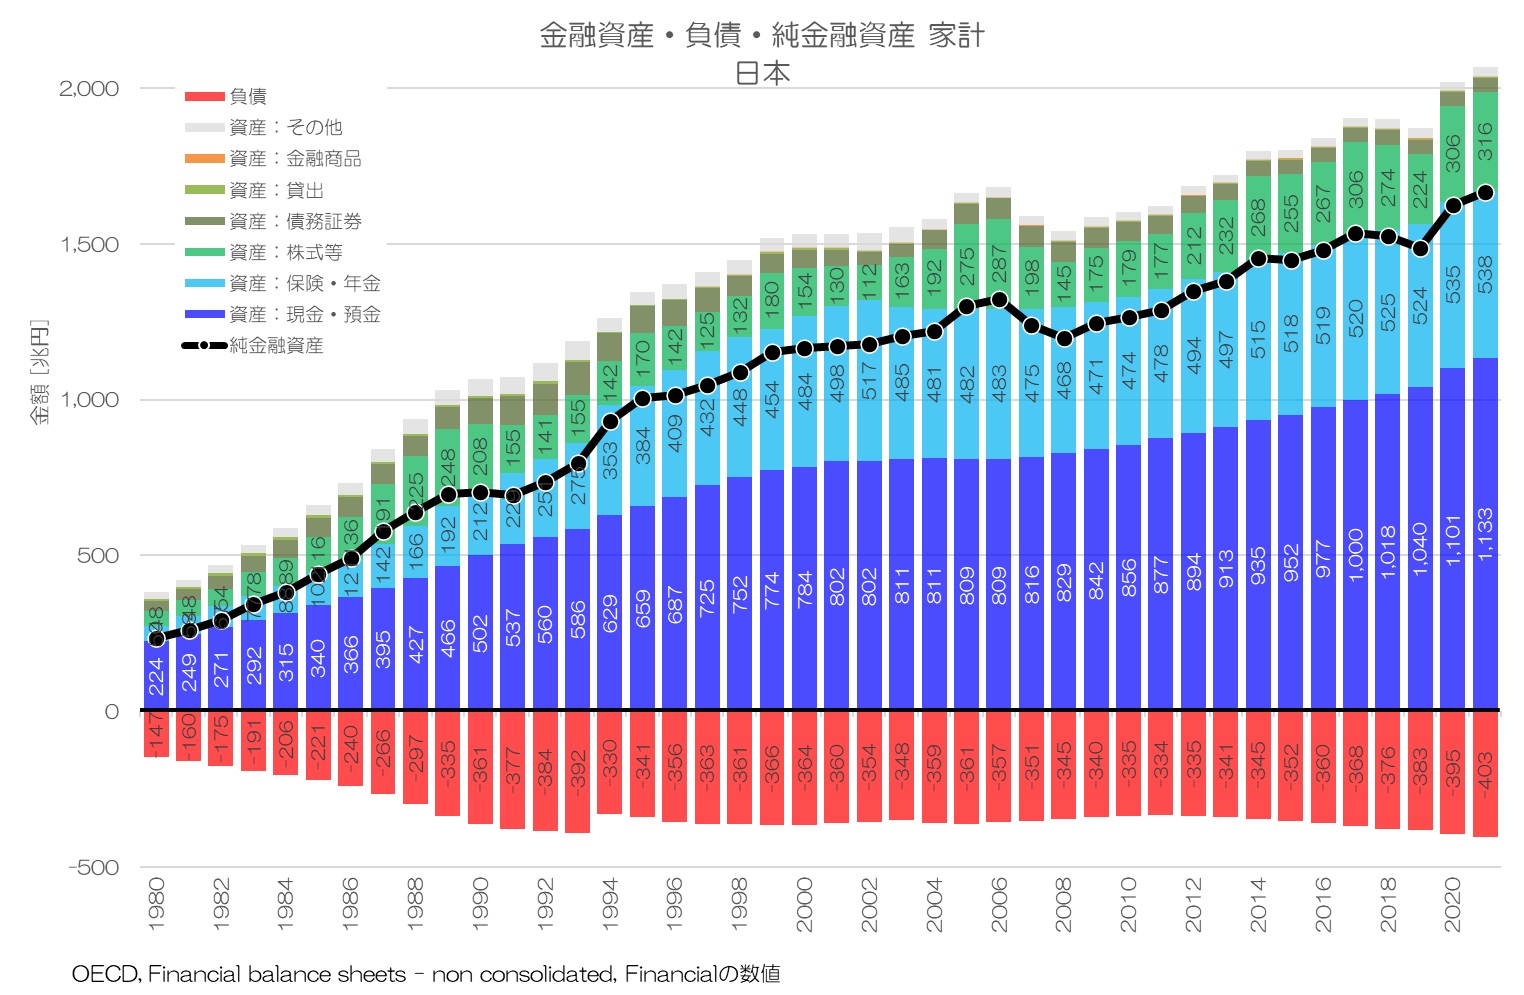  金融資産・負債・純金融資産 家計 日本